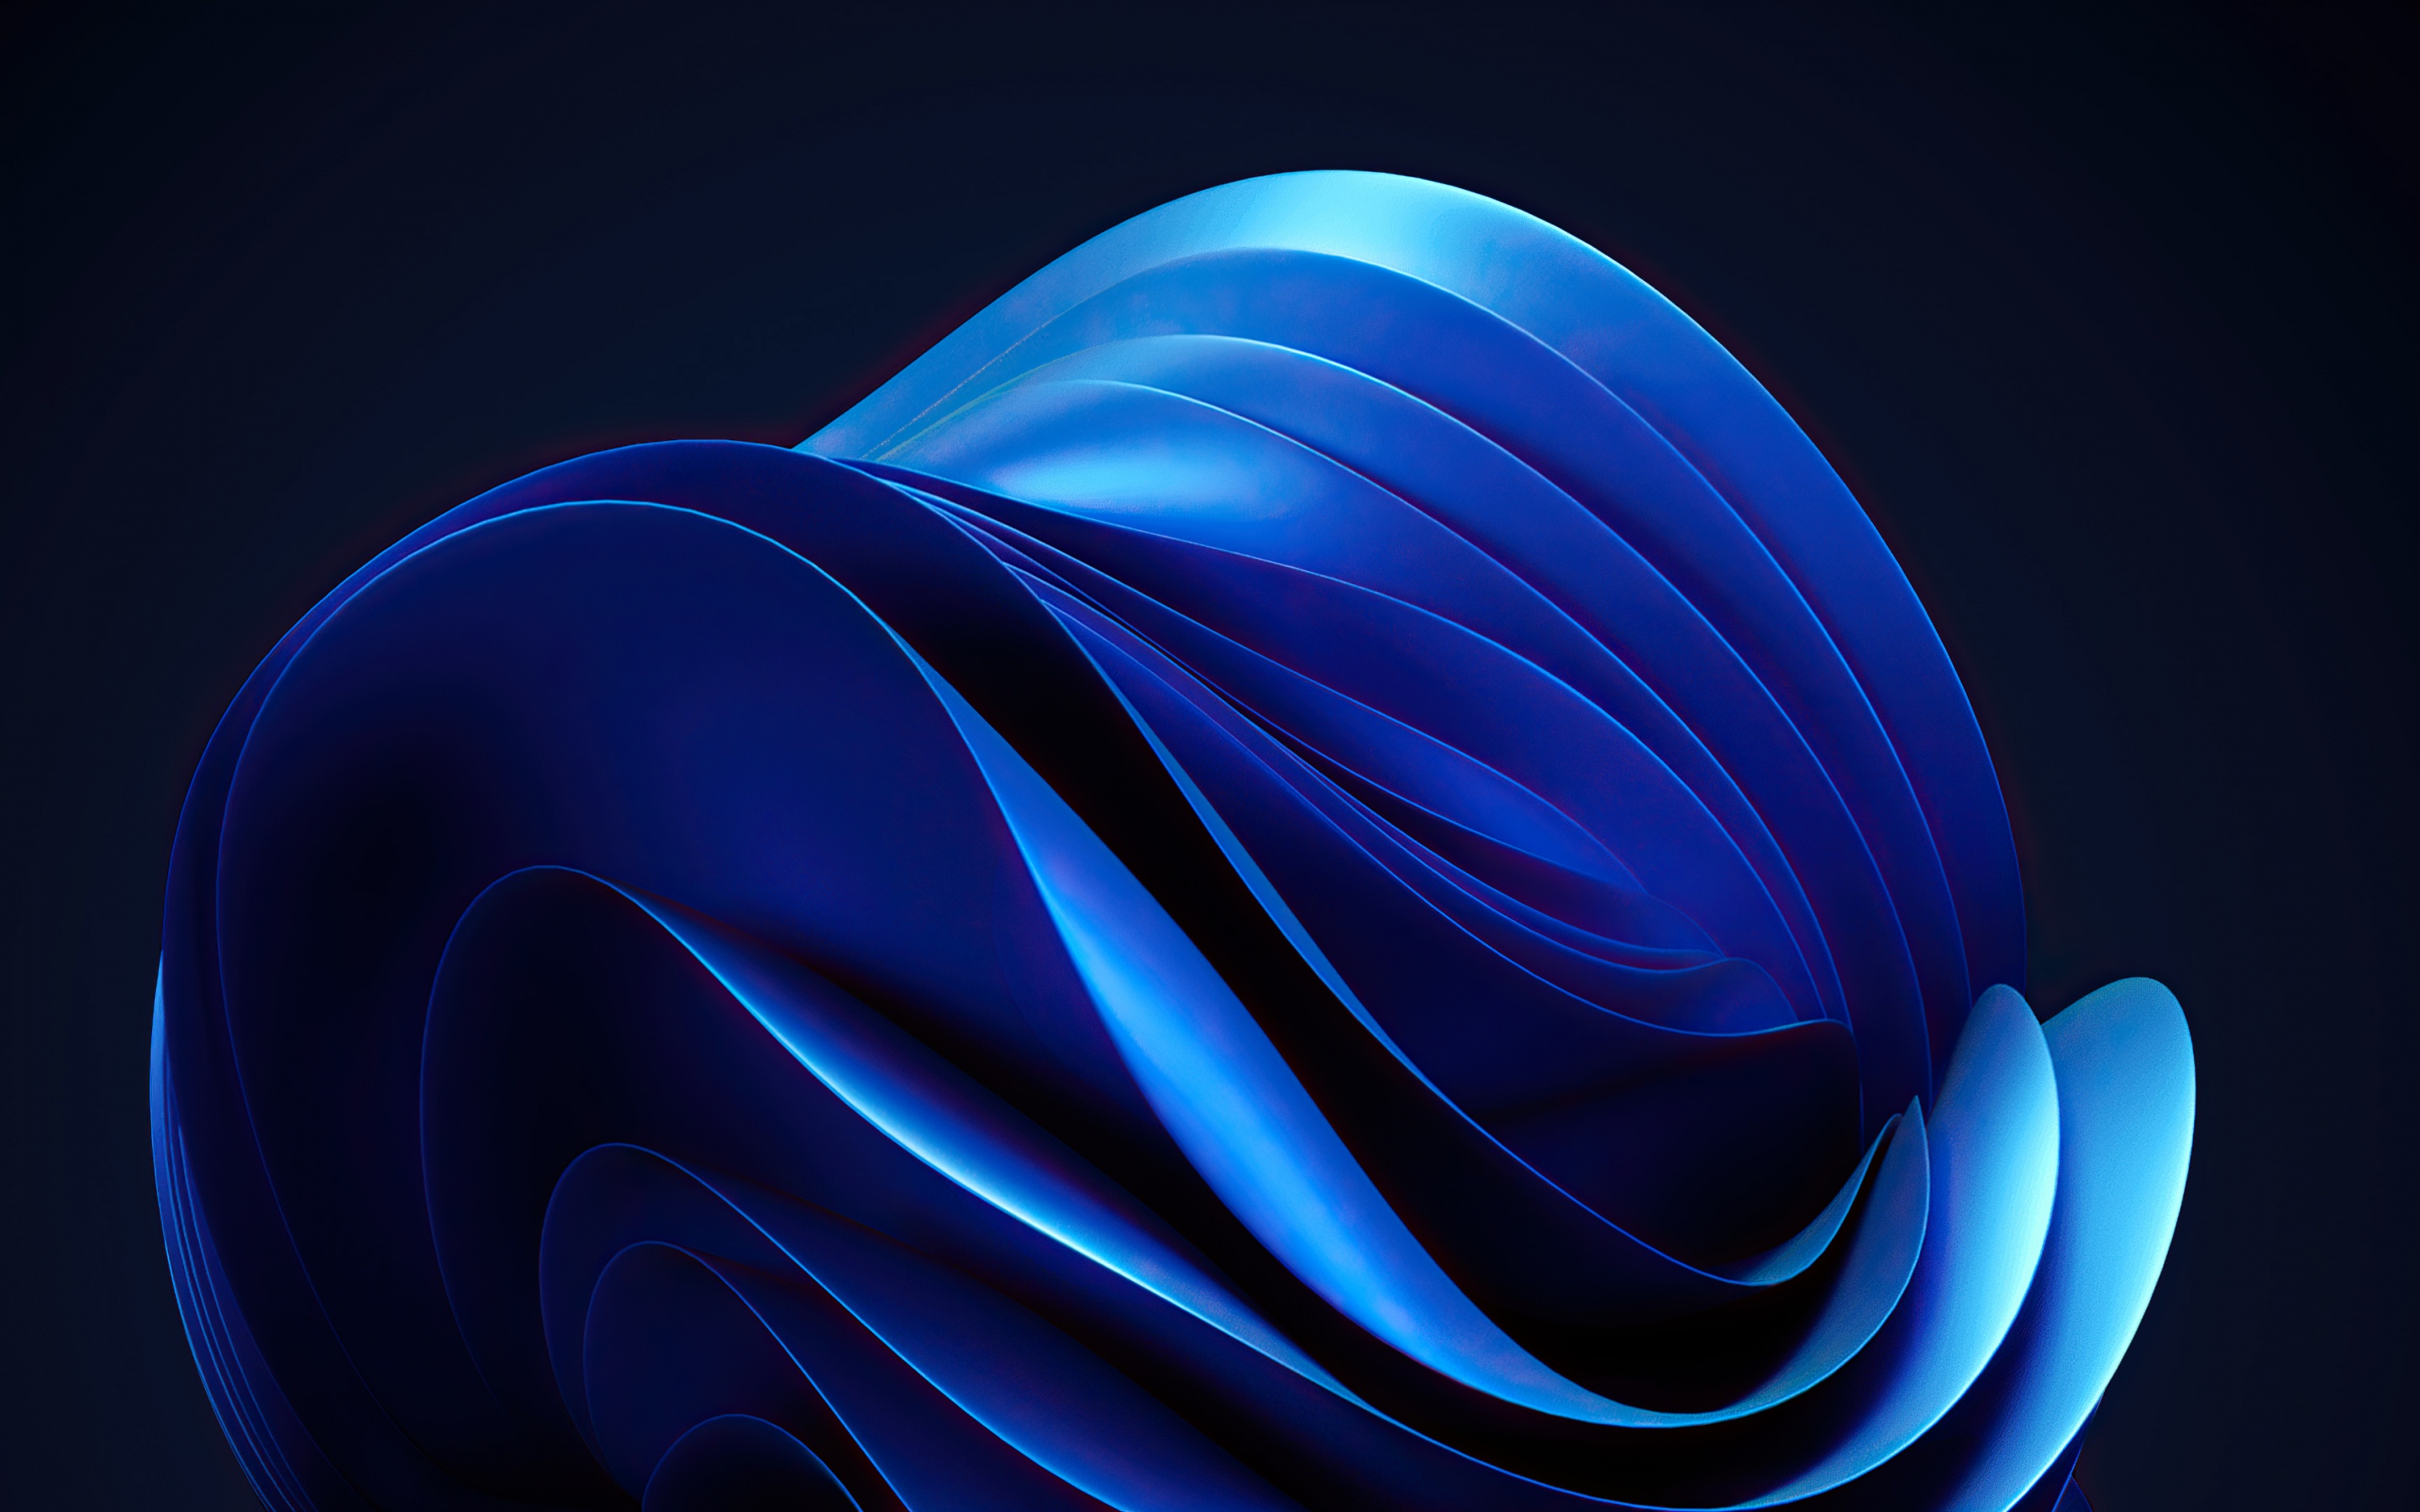 Bộ sưu tập hình nền Abstract Blue thực sự là một tác phẩm nghệ thuật độc đáo, giúp bạn khám phá những nguồn cảm hứng vô tận. Với những điểm nhấn tuyệt vời, biểu tượng và phong cách độc đáo của riêng nó, bạn sẽ không thể rời mắt khỏi những hình ảnh đặc biệt này. Hãy cùng chiêm ngưỡng và tận hưởng nhé!